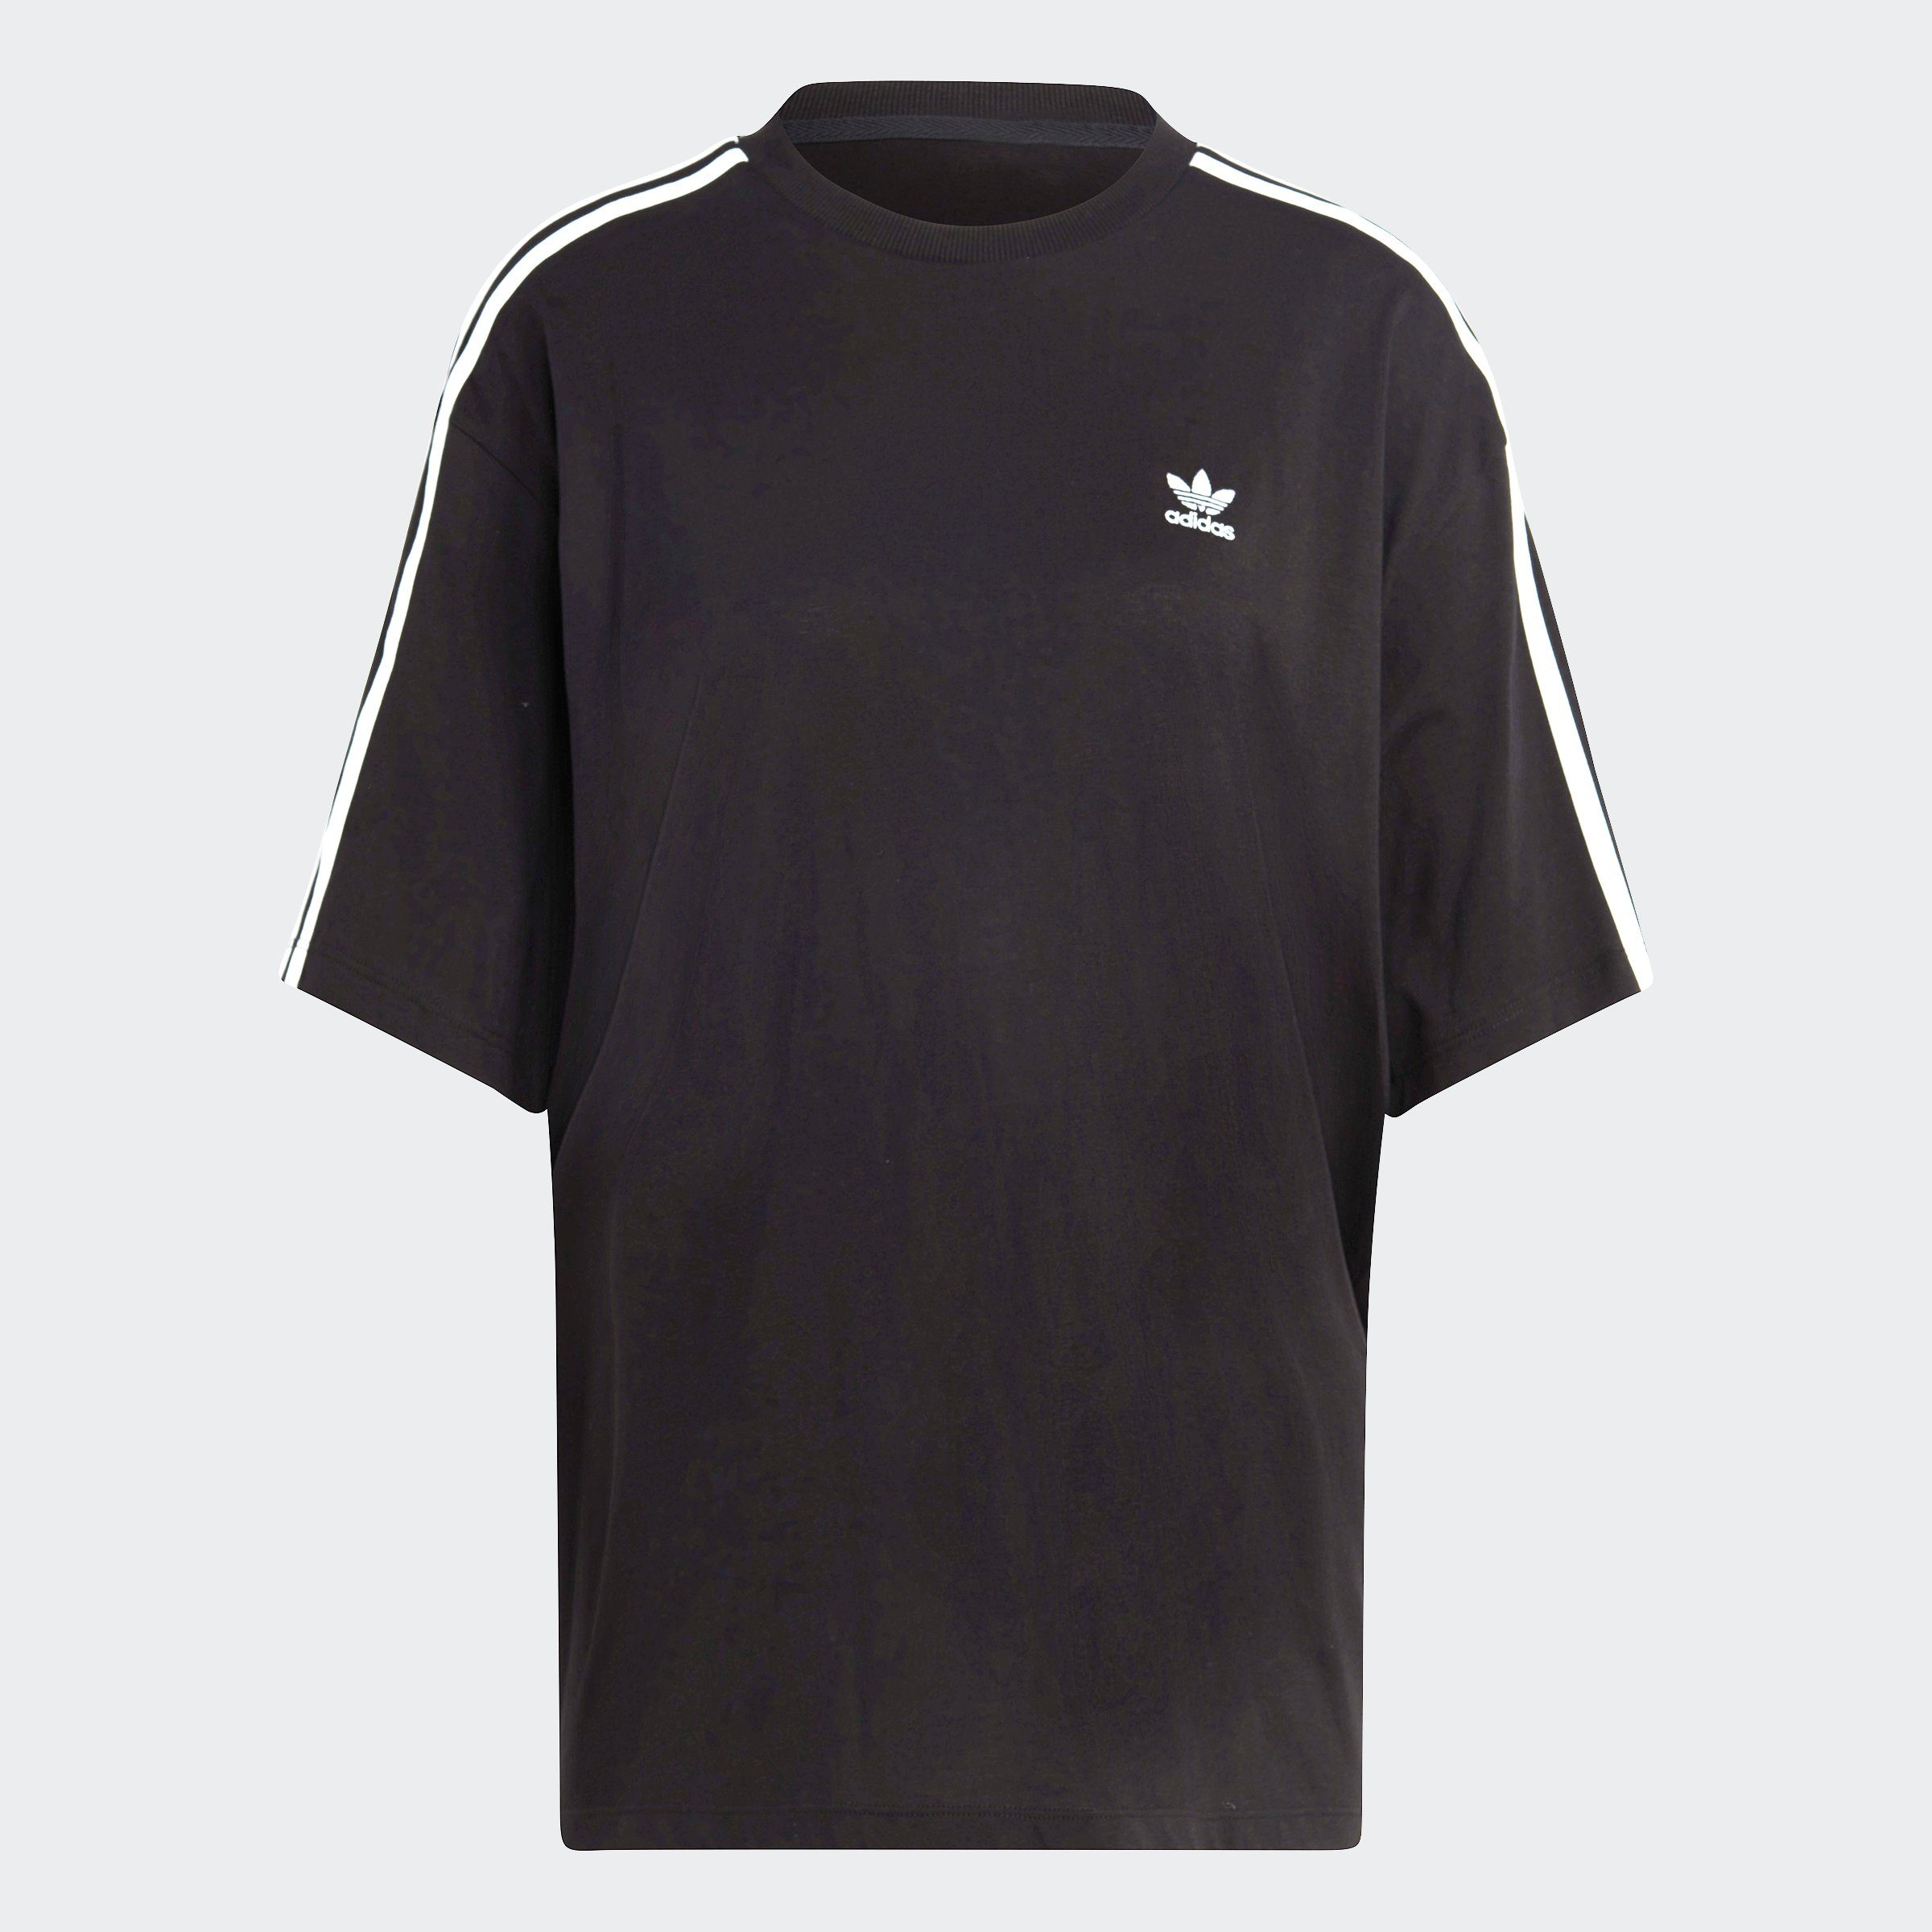 OVERSIZED ADICOLOR Originals Black T-Shirt adidas CLASSICS